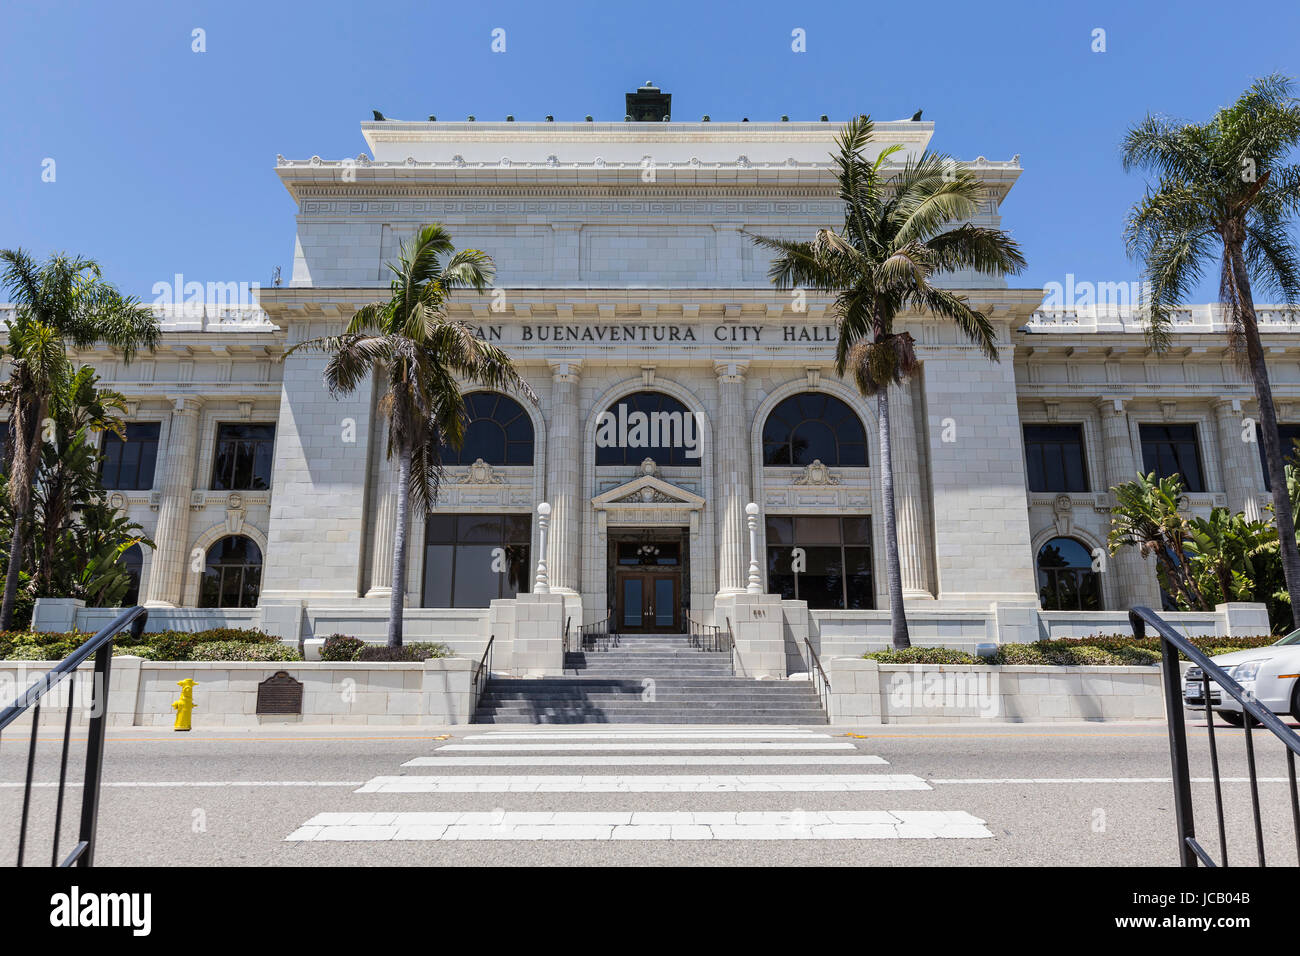 Ventura, California, USA - June 11, 2017: Front facade of the historic ...